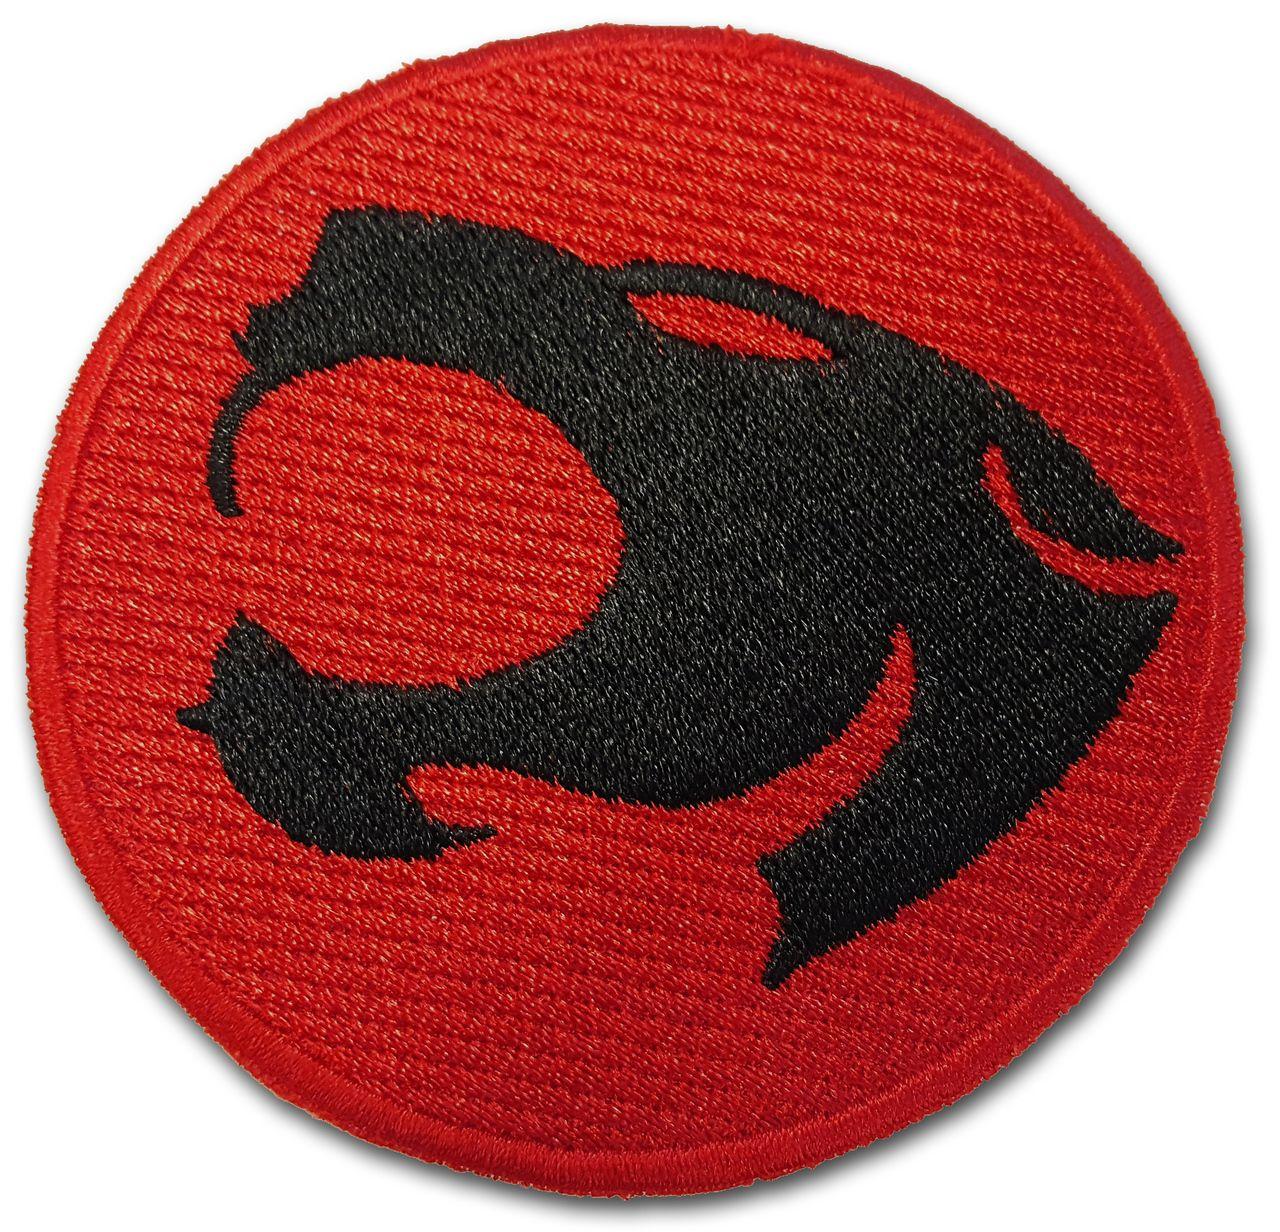 Thundercats Logo - Thundercats Logo Heat Sealed Embroidery Patch